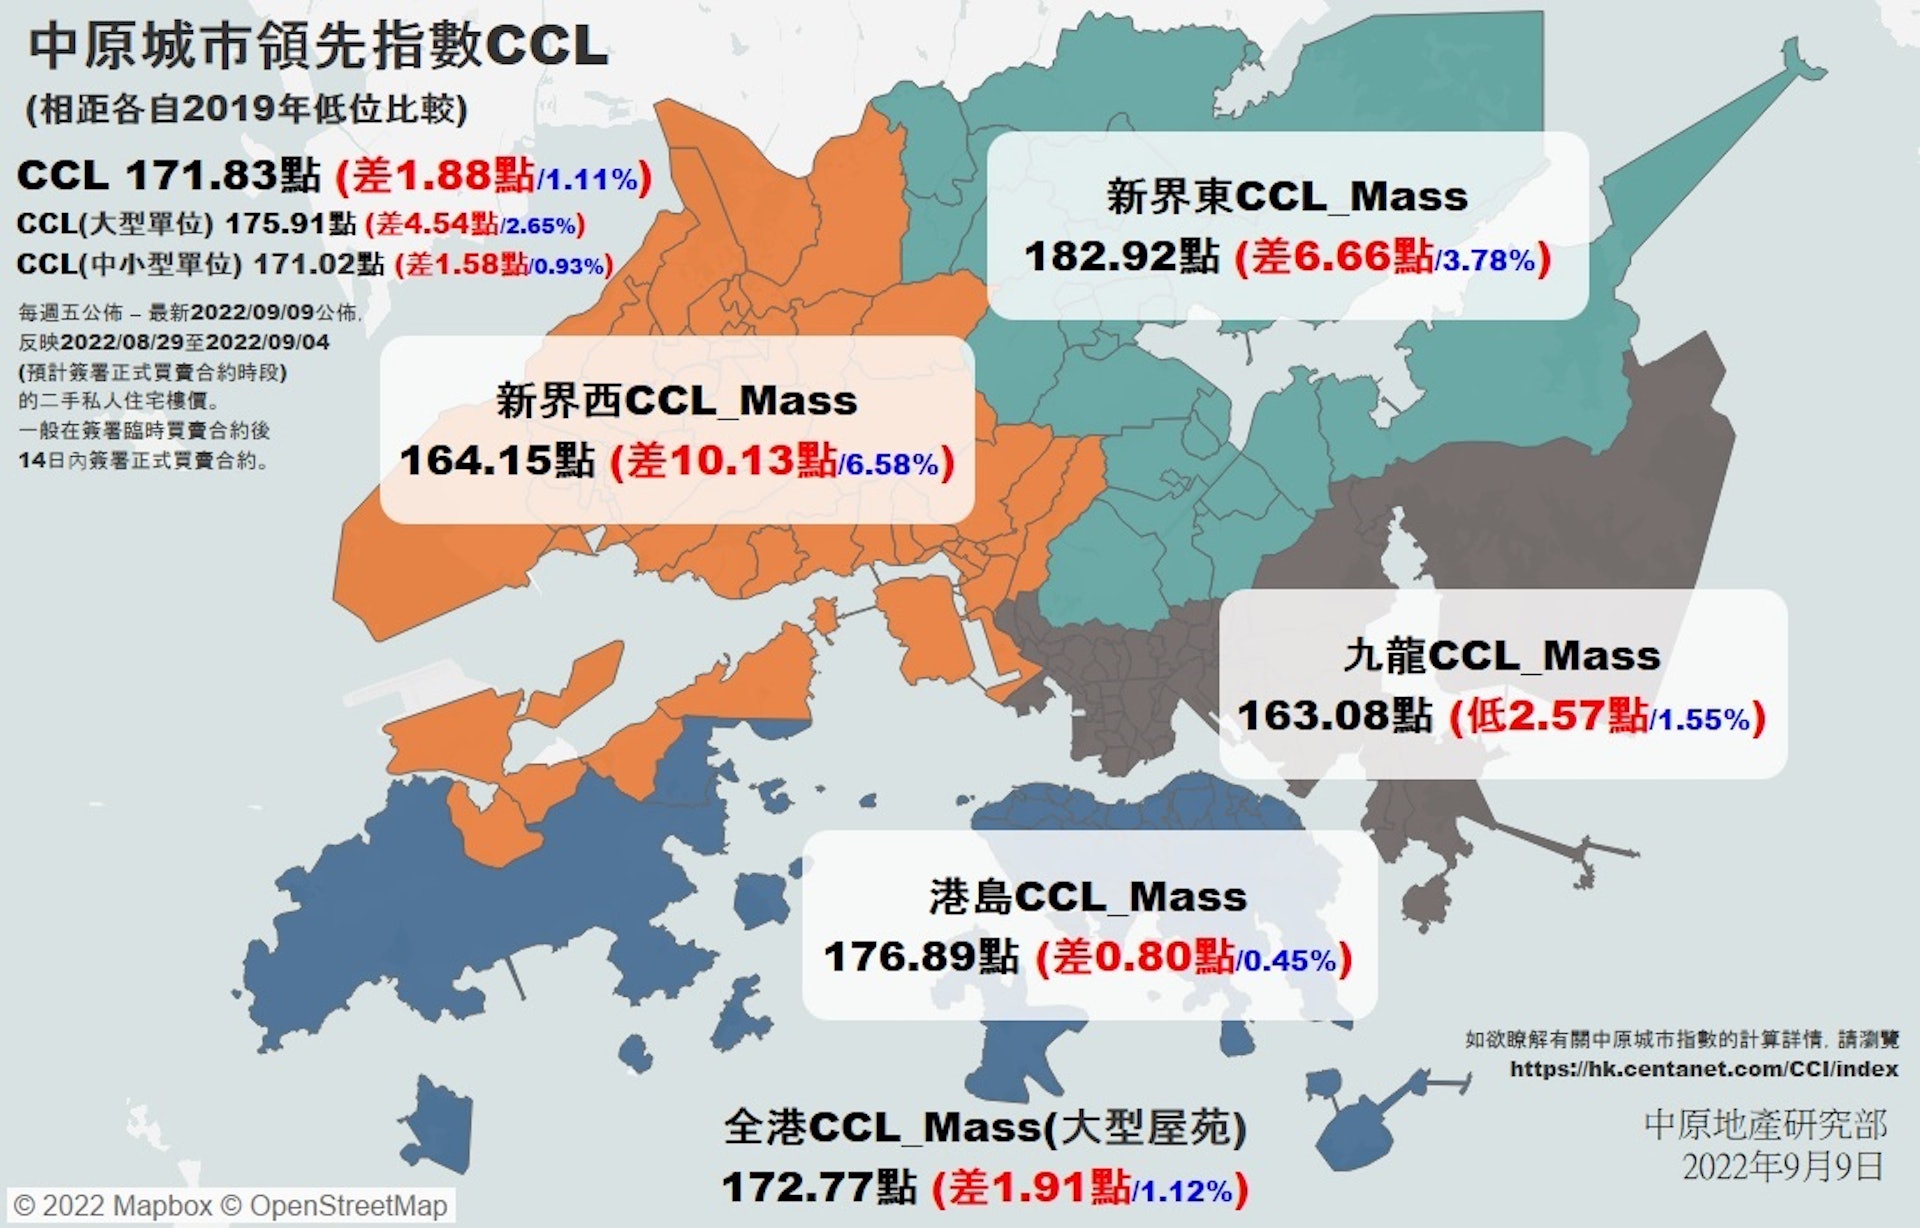 九龍CCL_Mass最新報163.08點，創240周新低，按周跌2.83%，跌幅是2019年9月後以來最大。